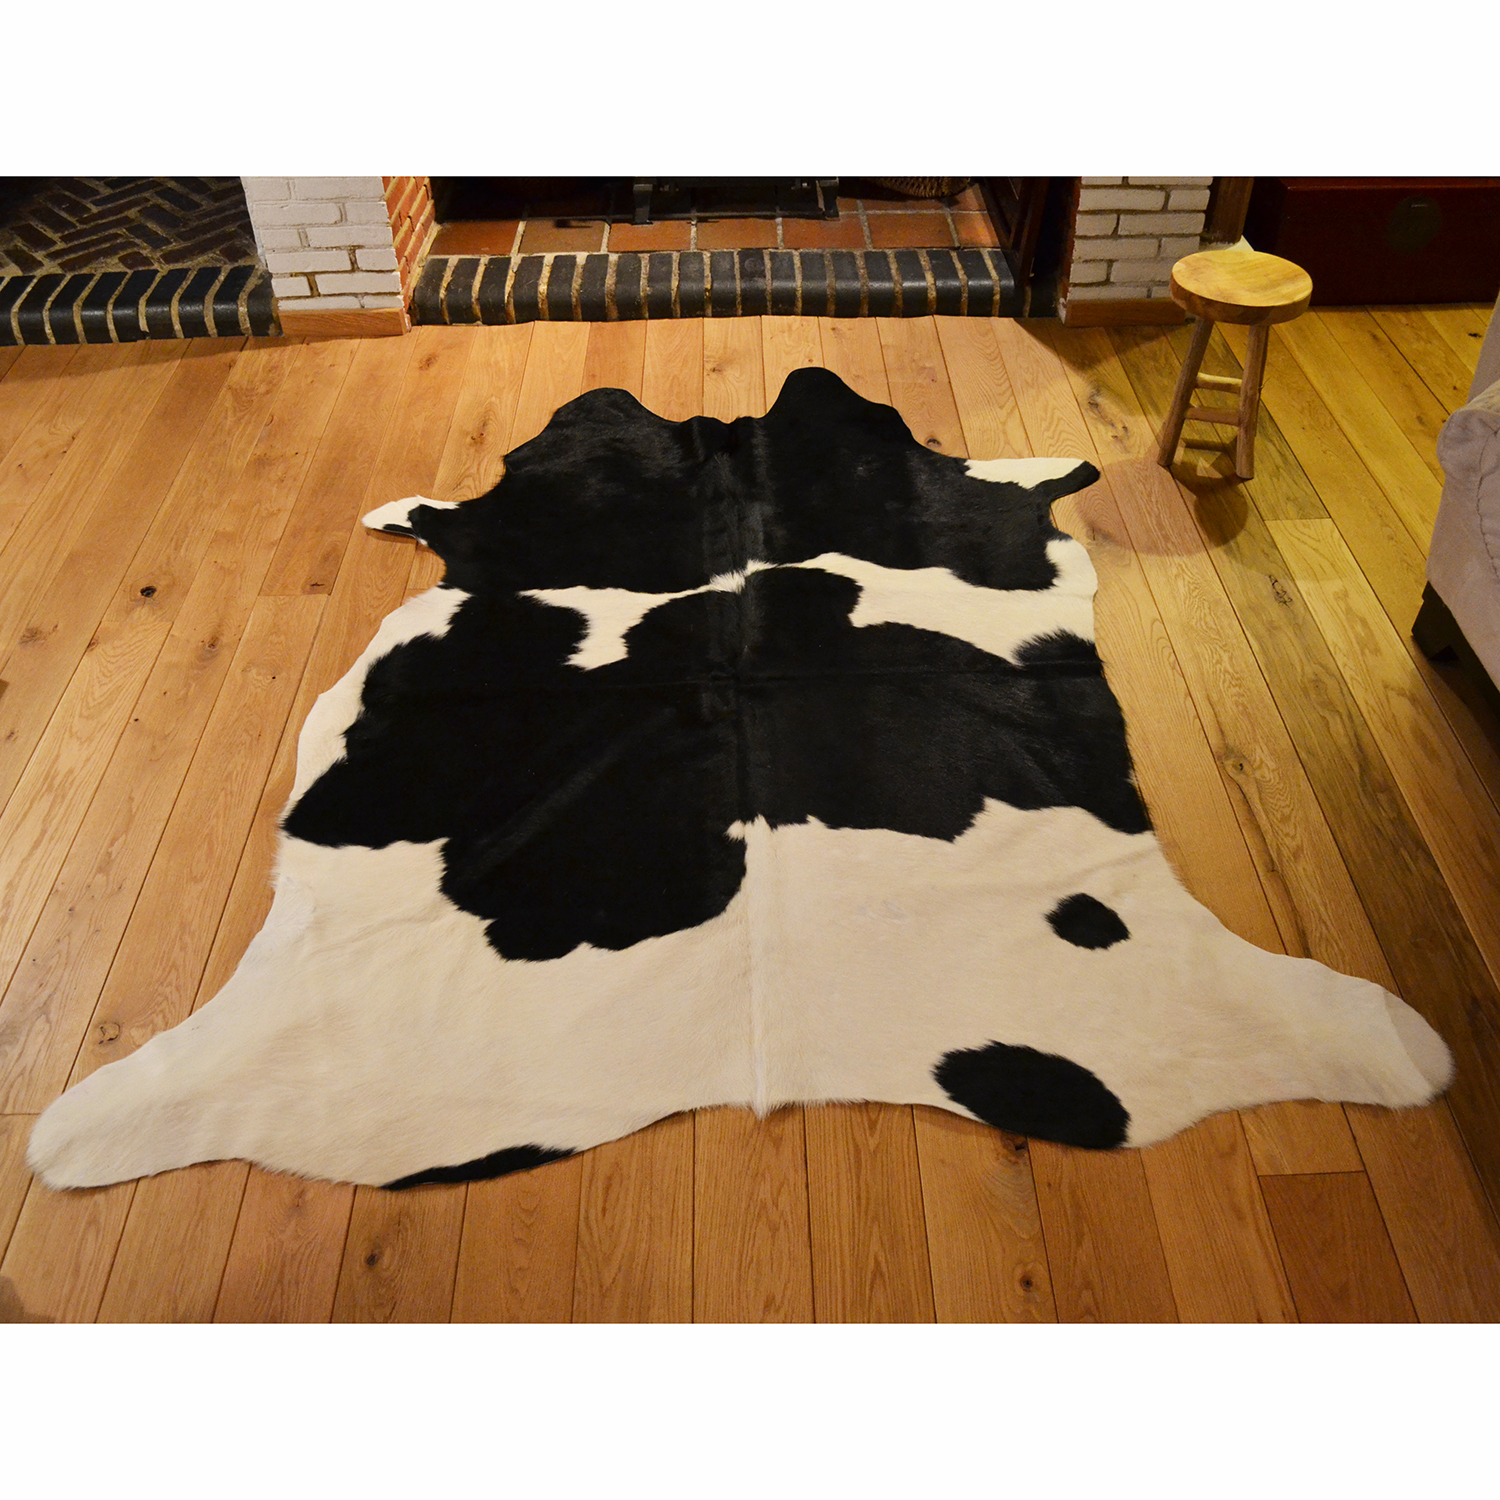 Kuhfell Teppich 172 250 x 190 schwarz und weiß | eBay